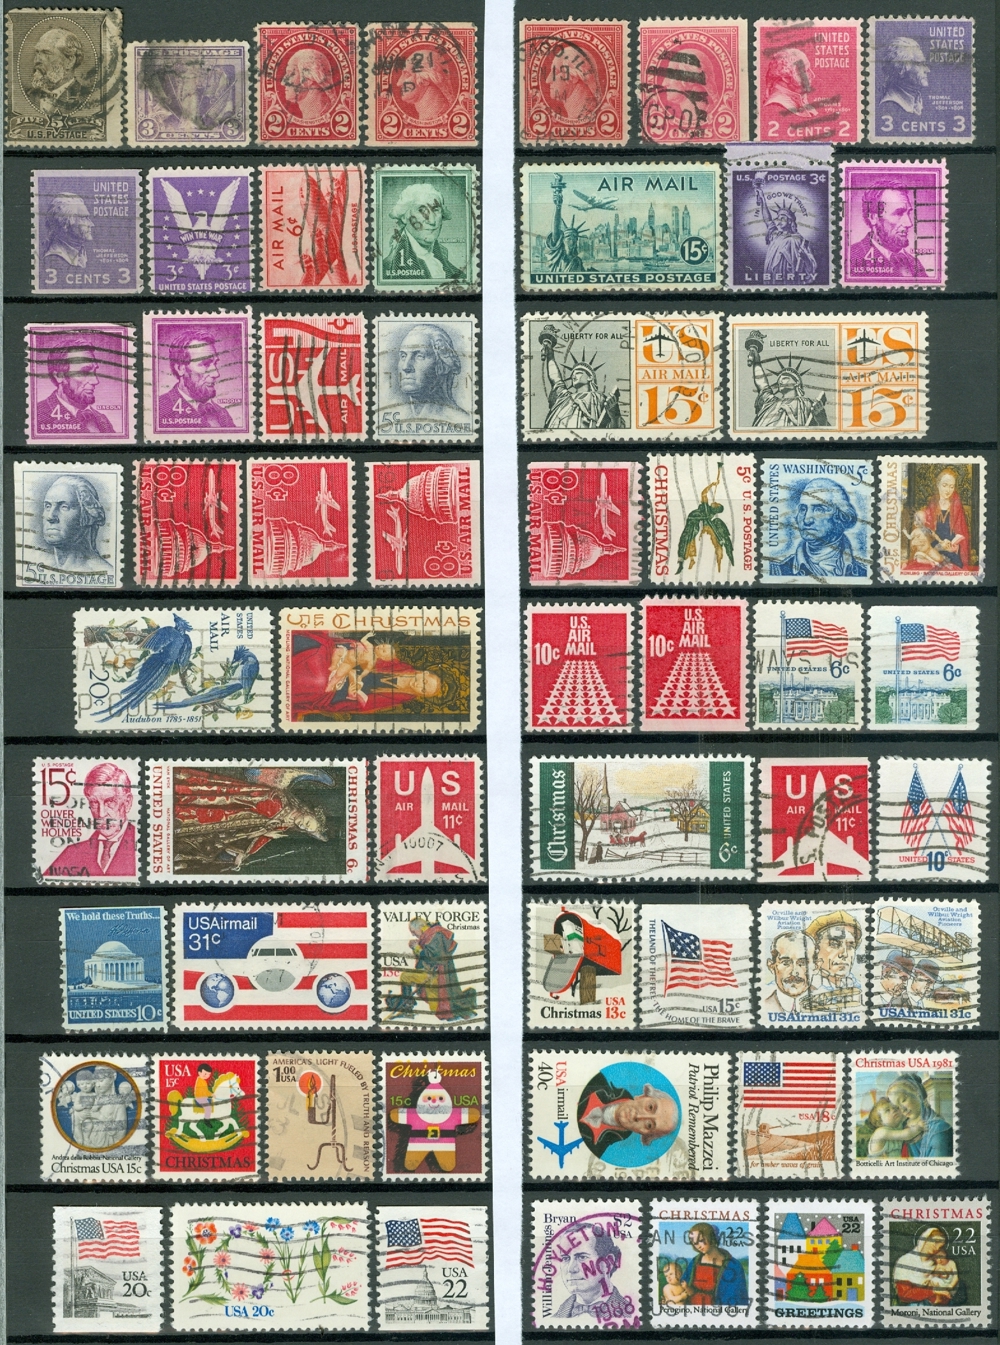 USA gestempeltes Lot aus Nr. 51-1959 wie auf dem Bild zu sehen.